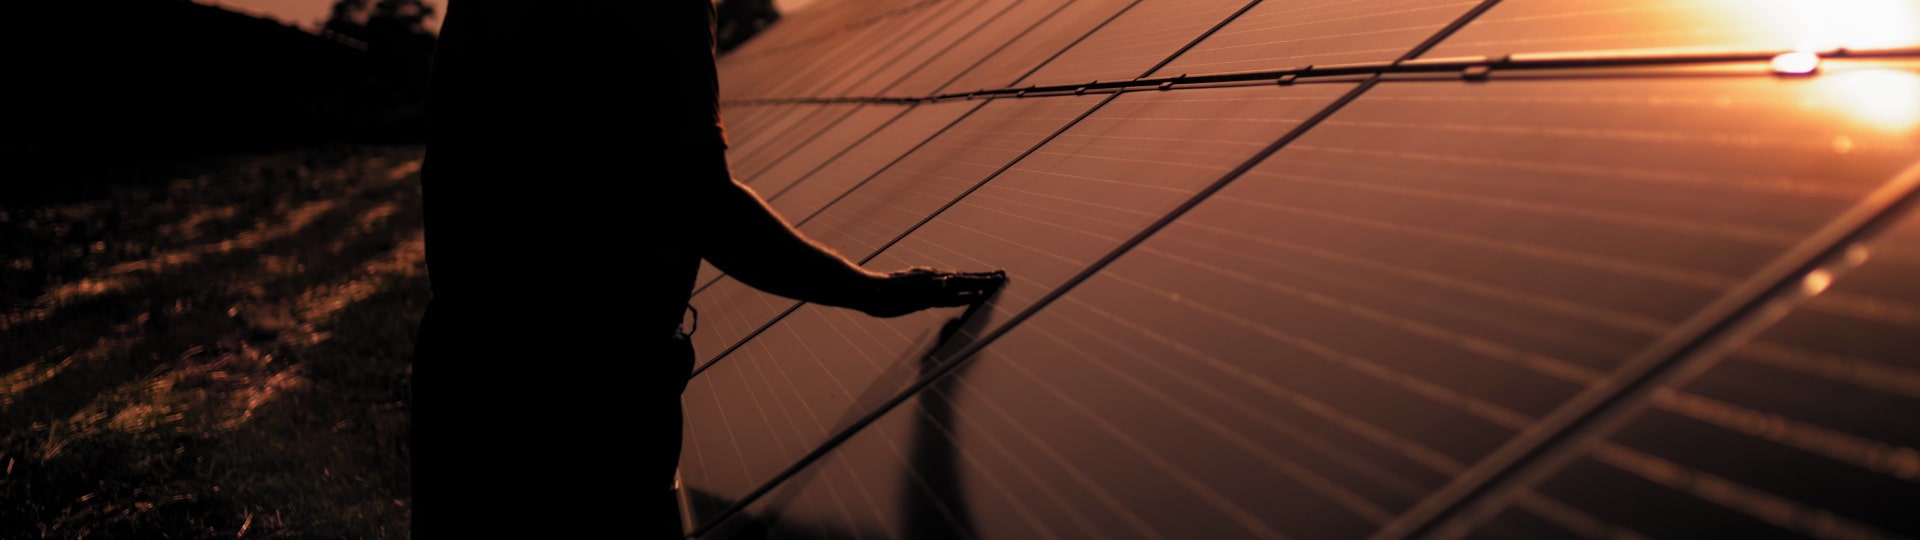 ČEZ loni meziročně zvýšil výrobu elektřiny z fotovoltaiky o 12 %